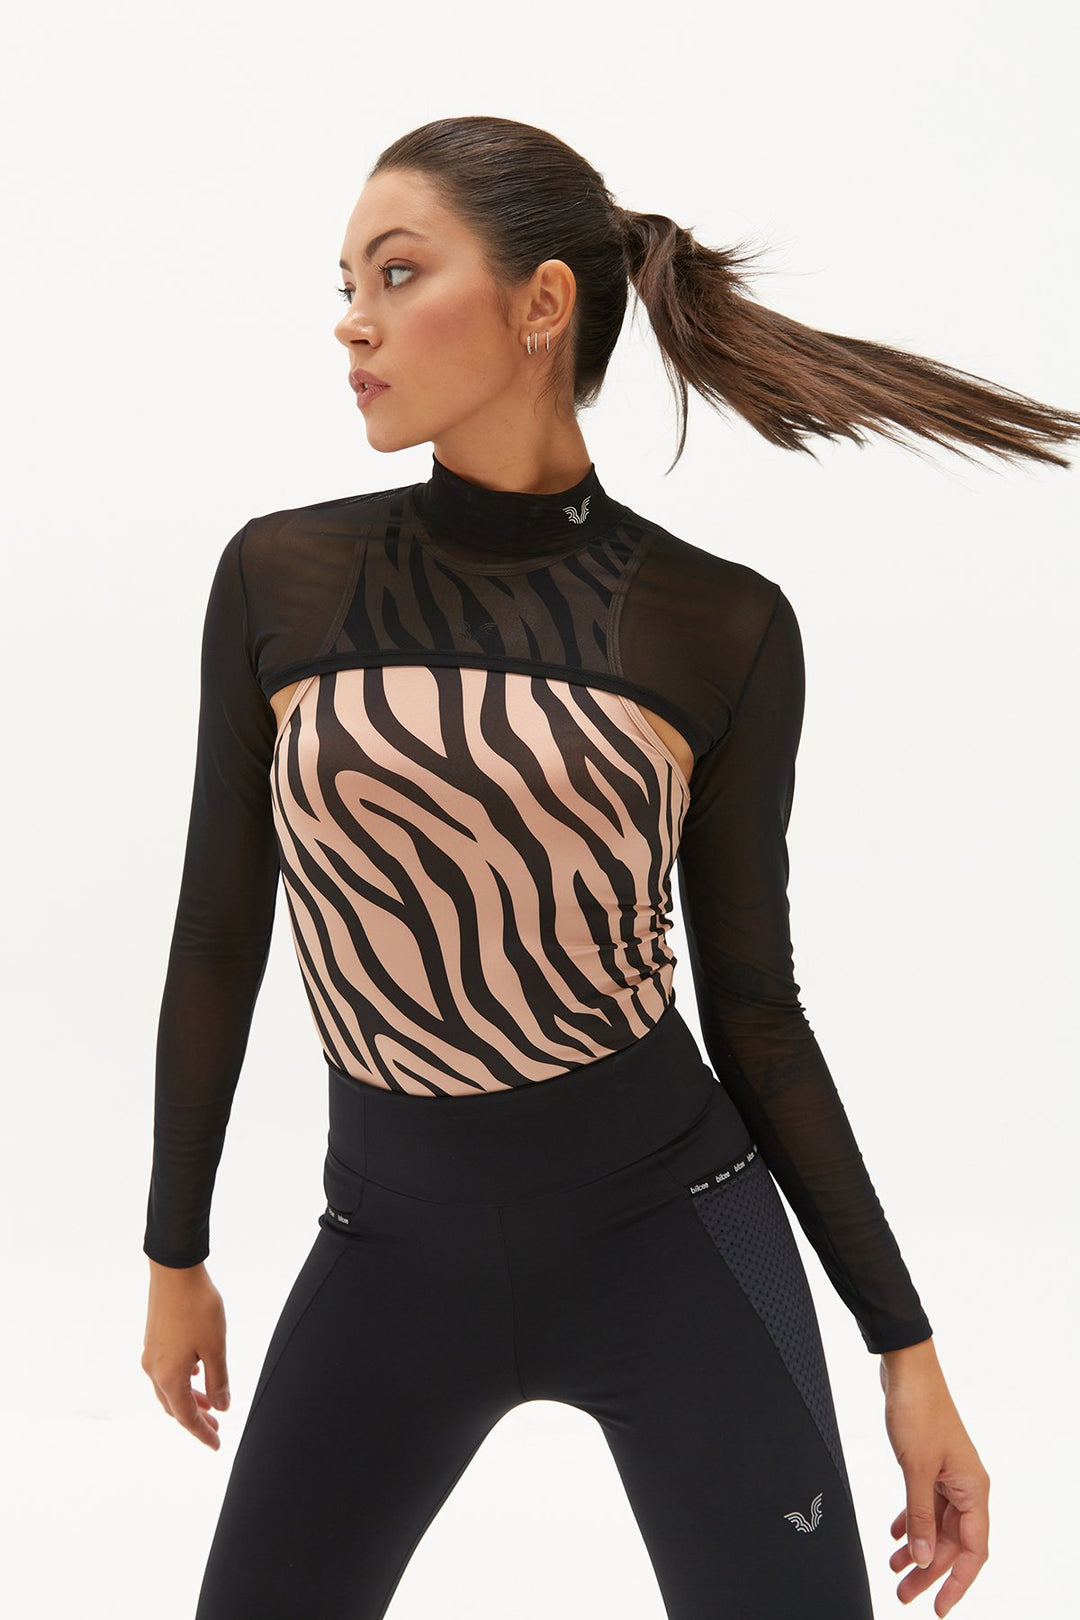 Damen Unterhemd mit Zebra-Muster